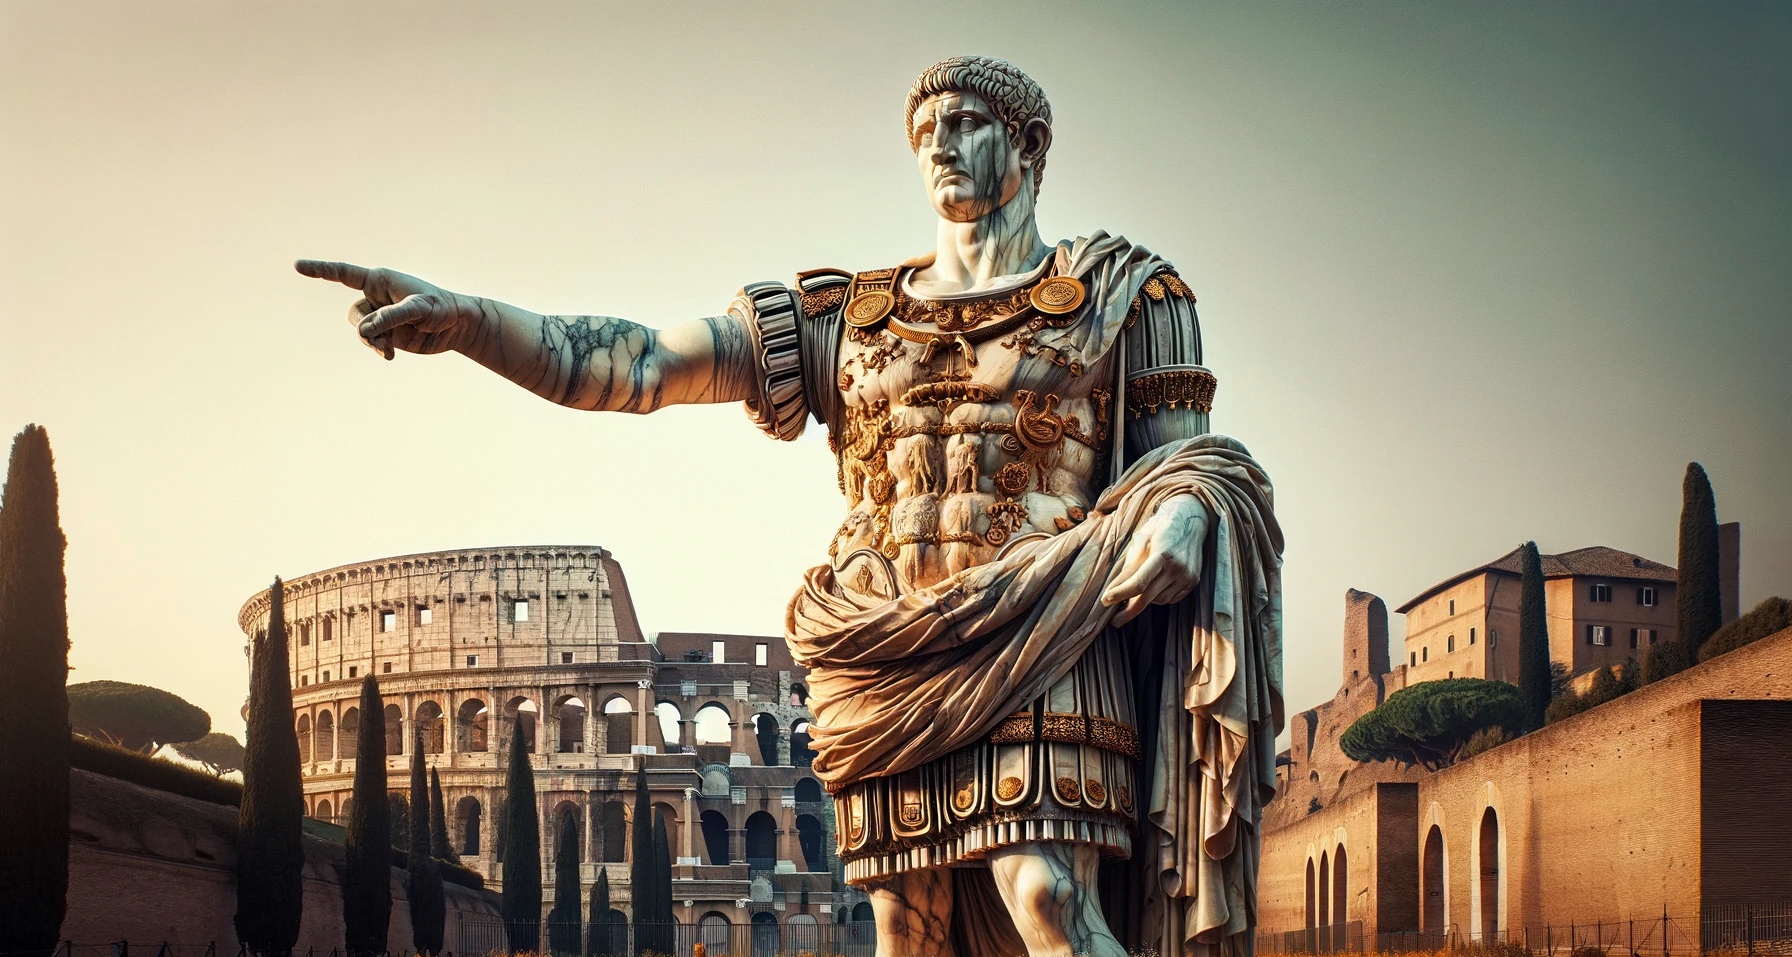 La nouvelle statue colossale de Constantin, inaugurée dans les jardins des Musées Capitolins, se révèle imposante : elle mesure 13 mètres de haut. © Musées Capitolins